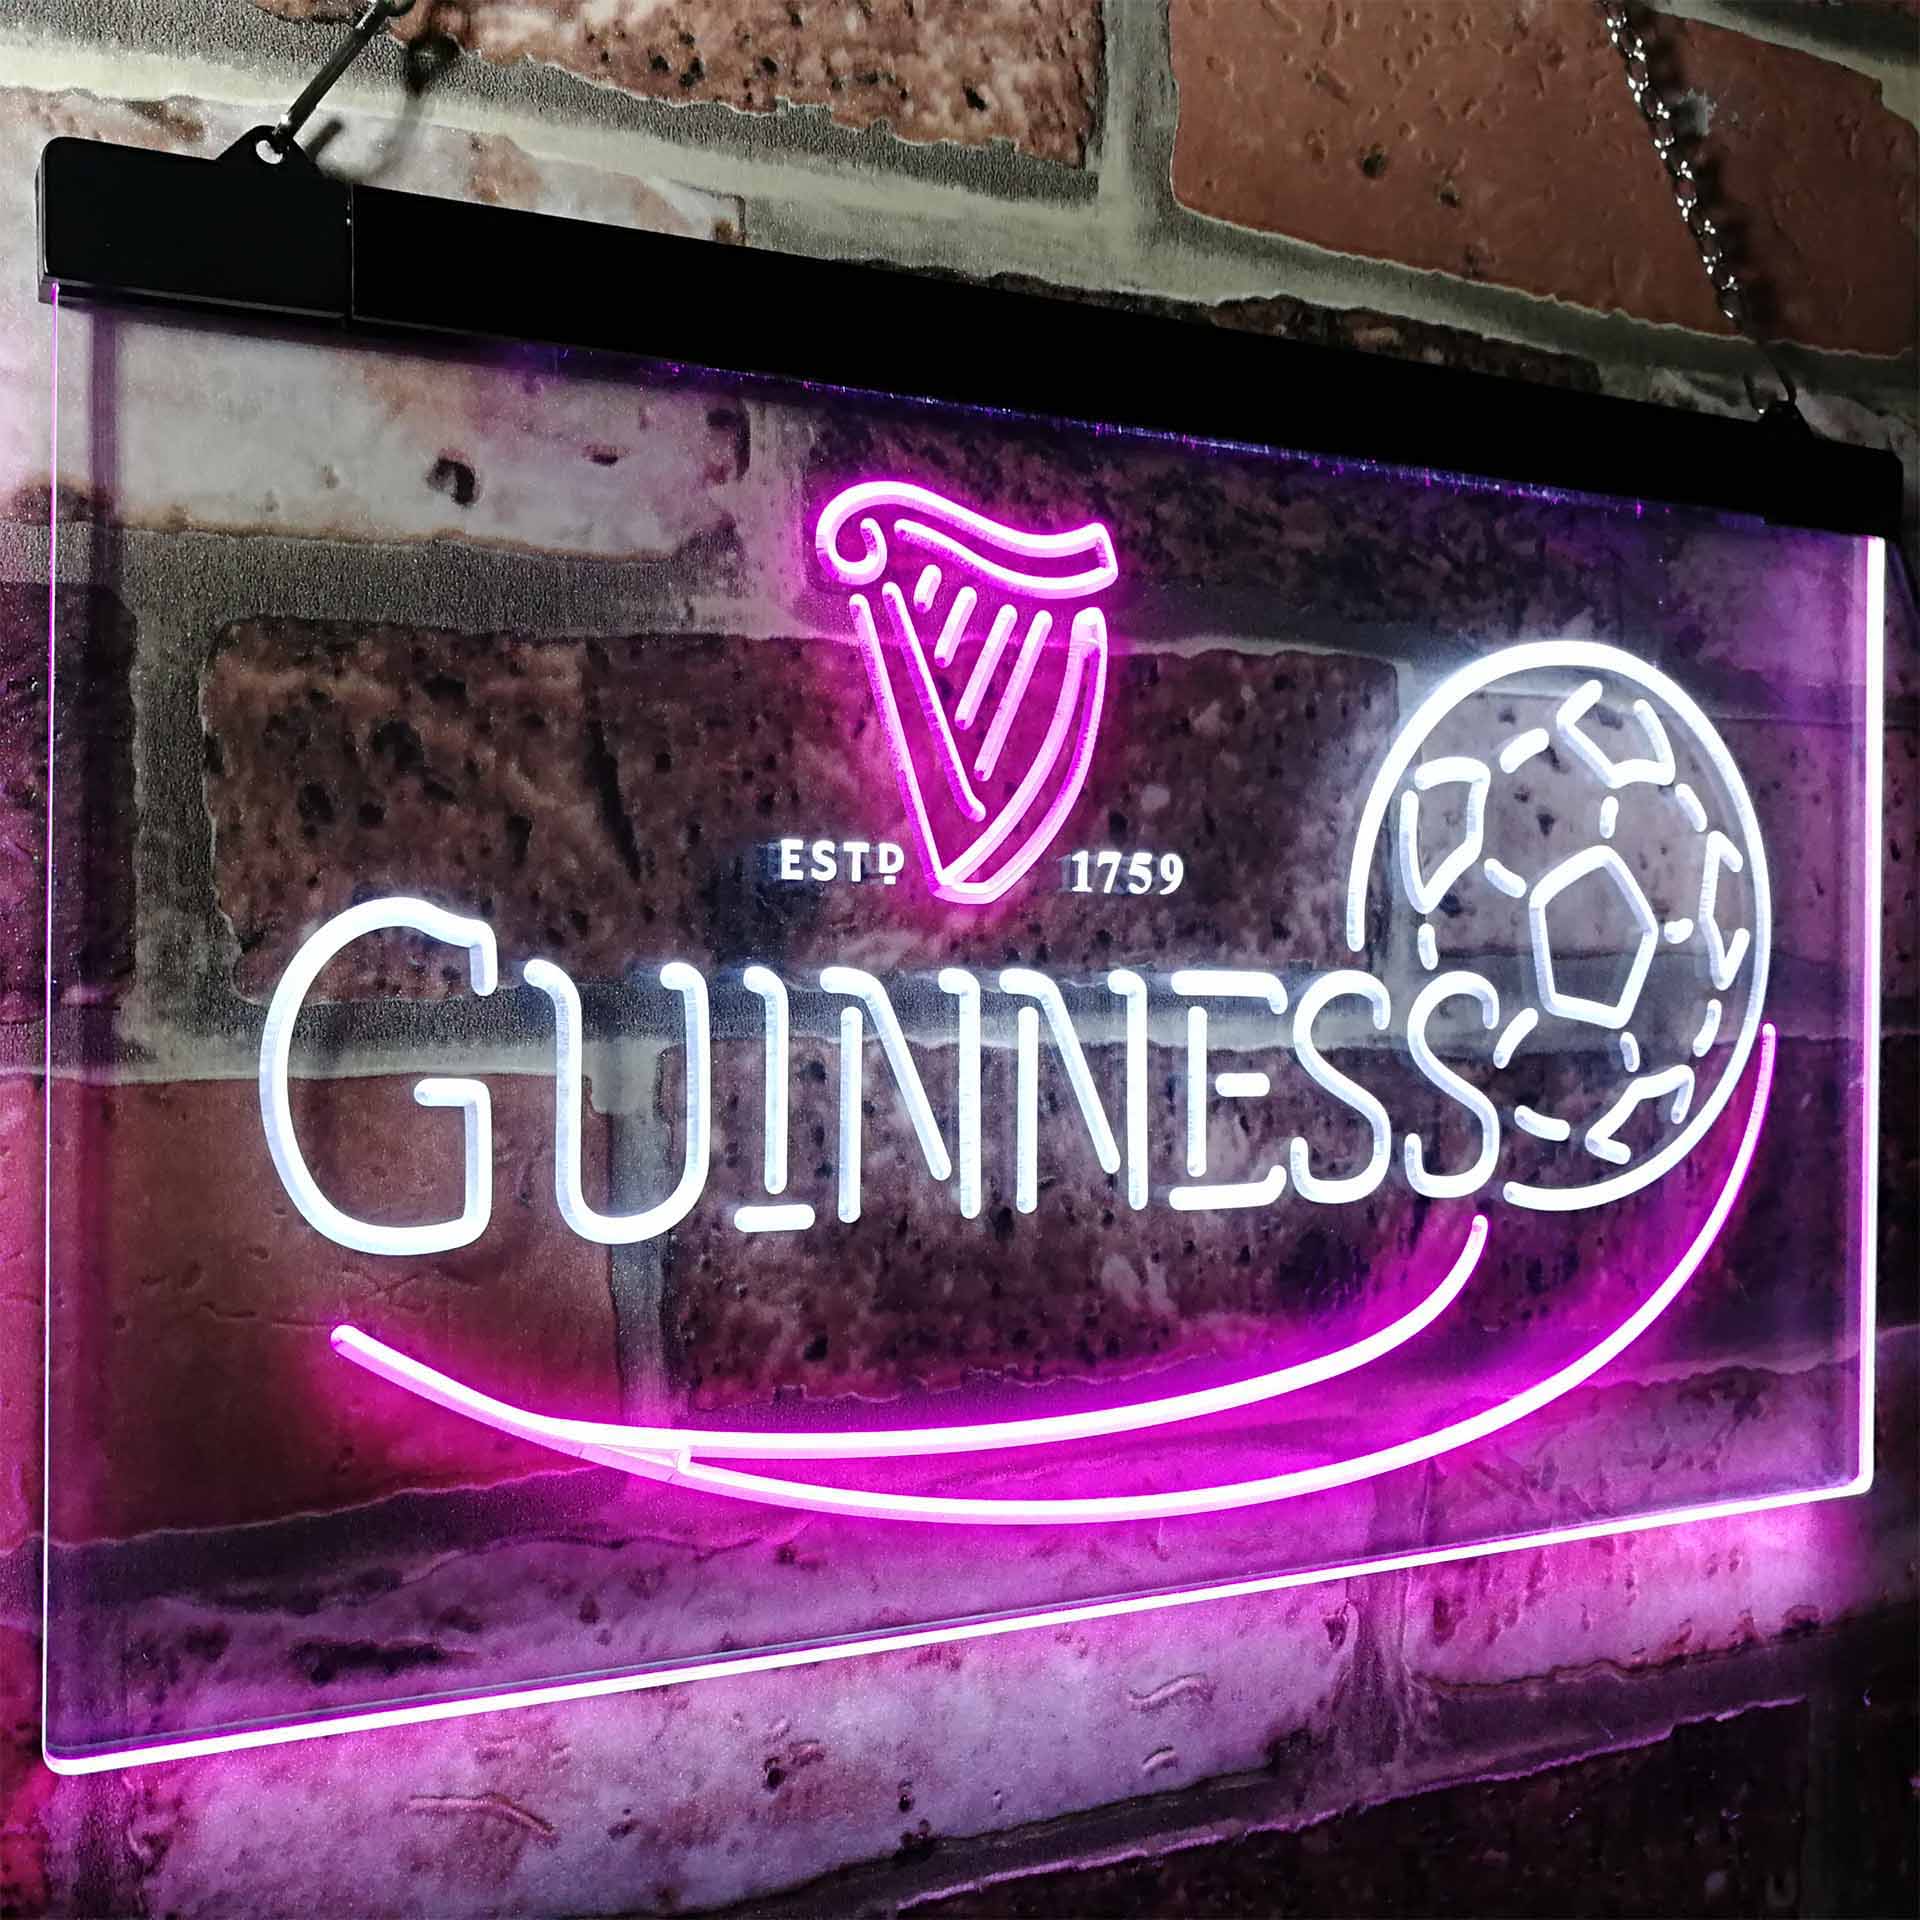 Guinness Soccer Football Beer Bar Decor Neon LED Sign